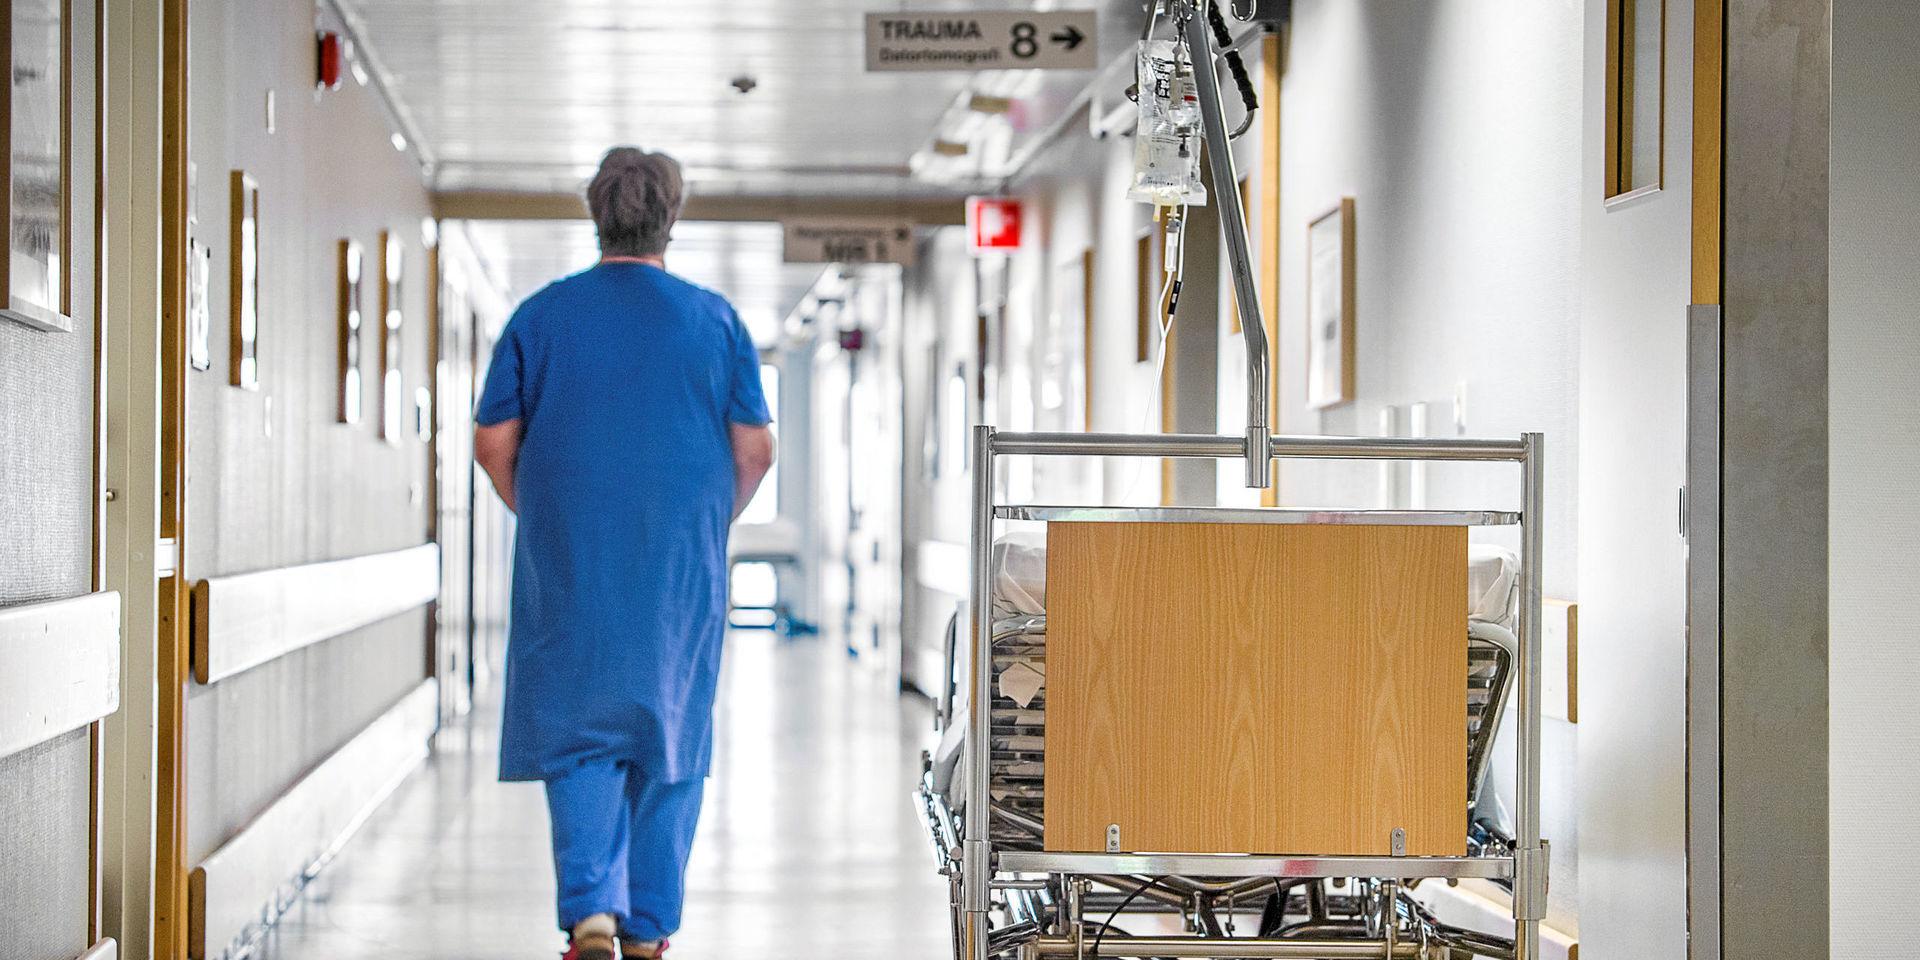 Vård. Istället för satsningar på den egna personalen och sjukhusen har pengar forsat ut till inhyrd personal och dyrköpt privat vård, skriver debattören som sin slutreplik.